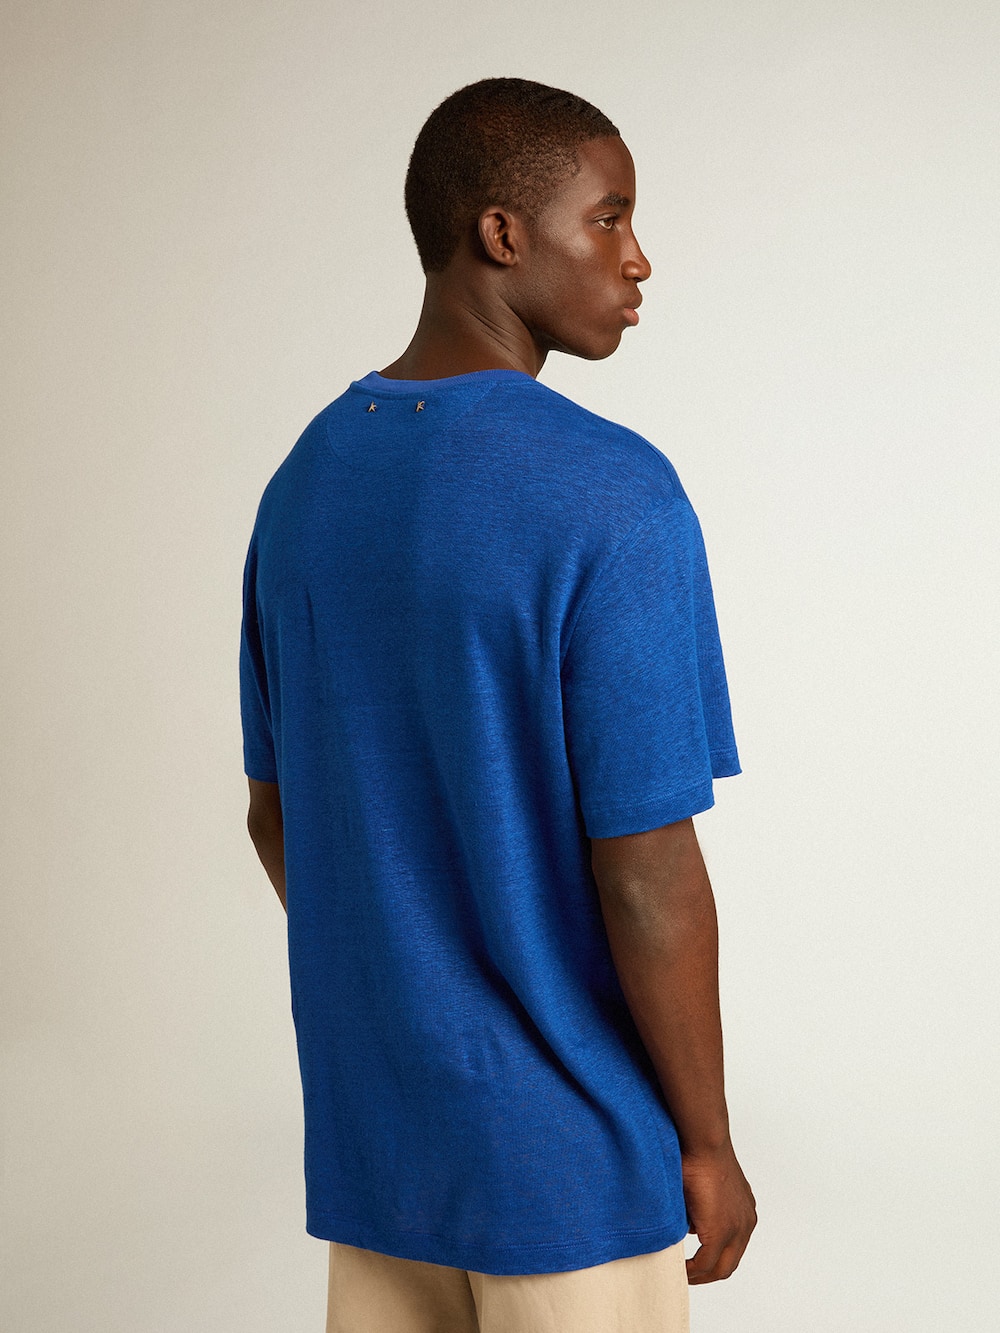 Golden Goose - Blaues Herren-T-Shirt aus Leinen mit Print auf der Brust in 